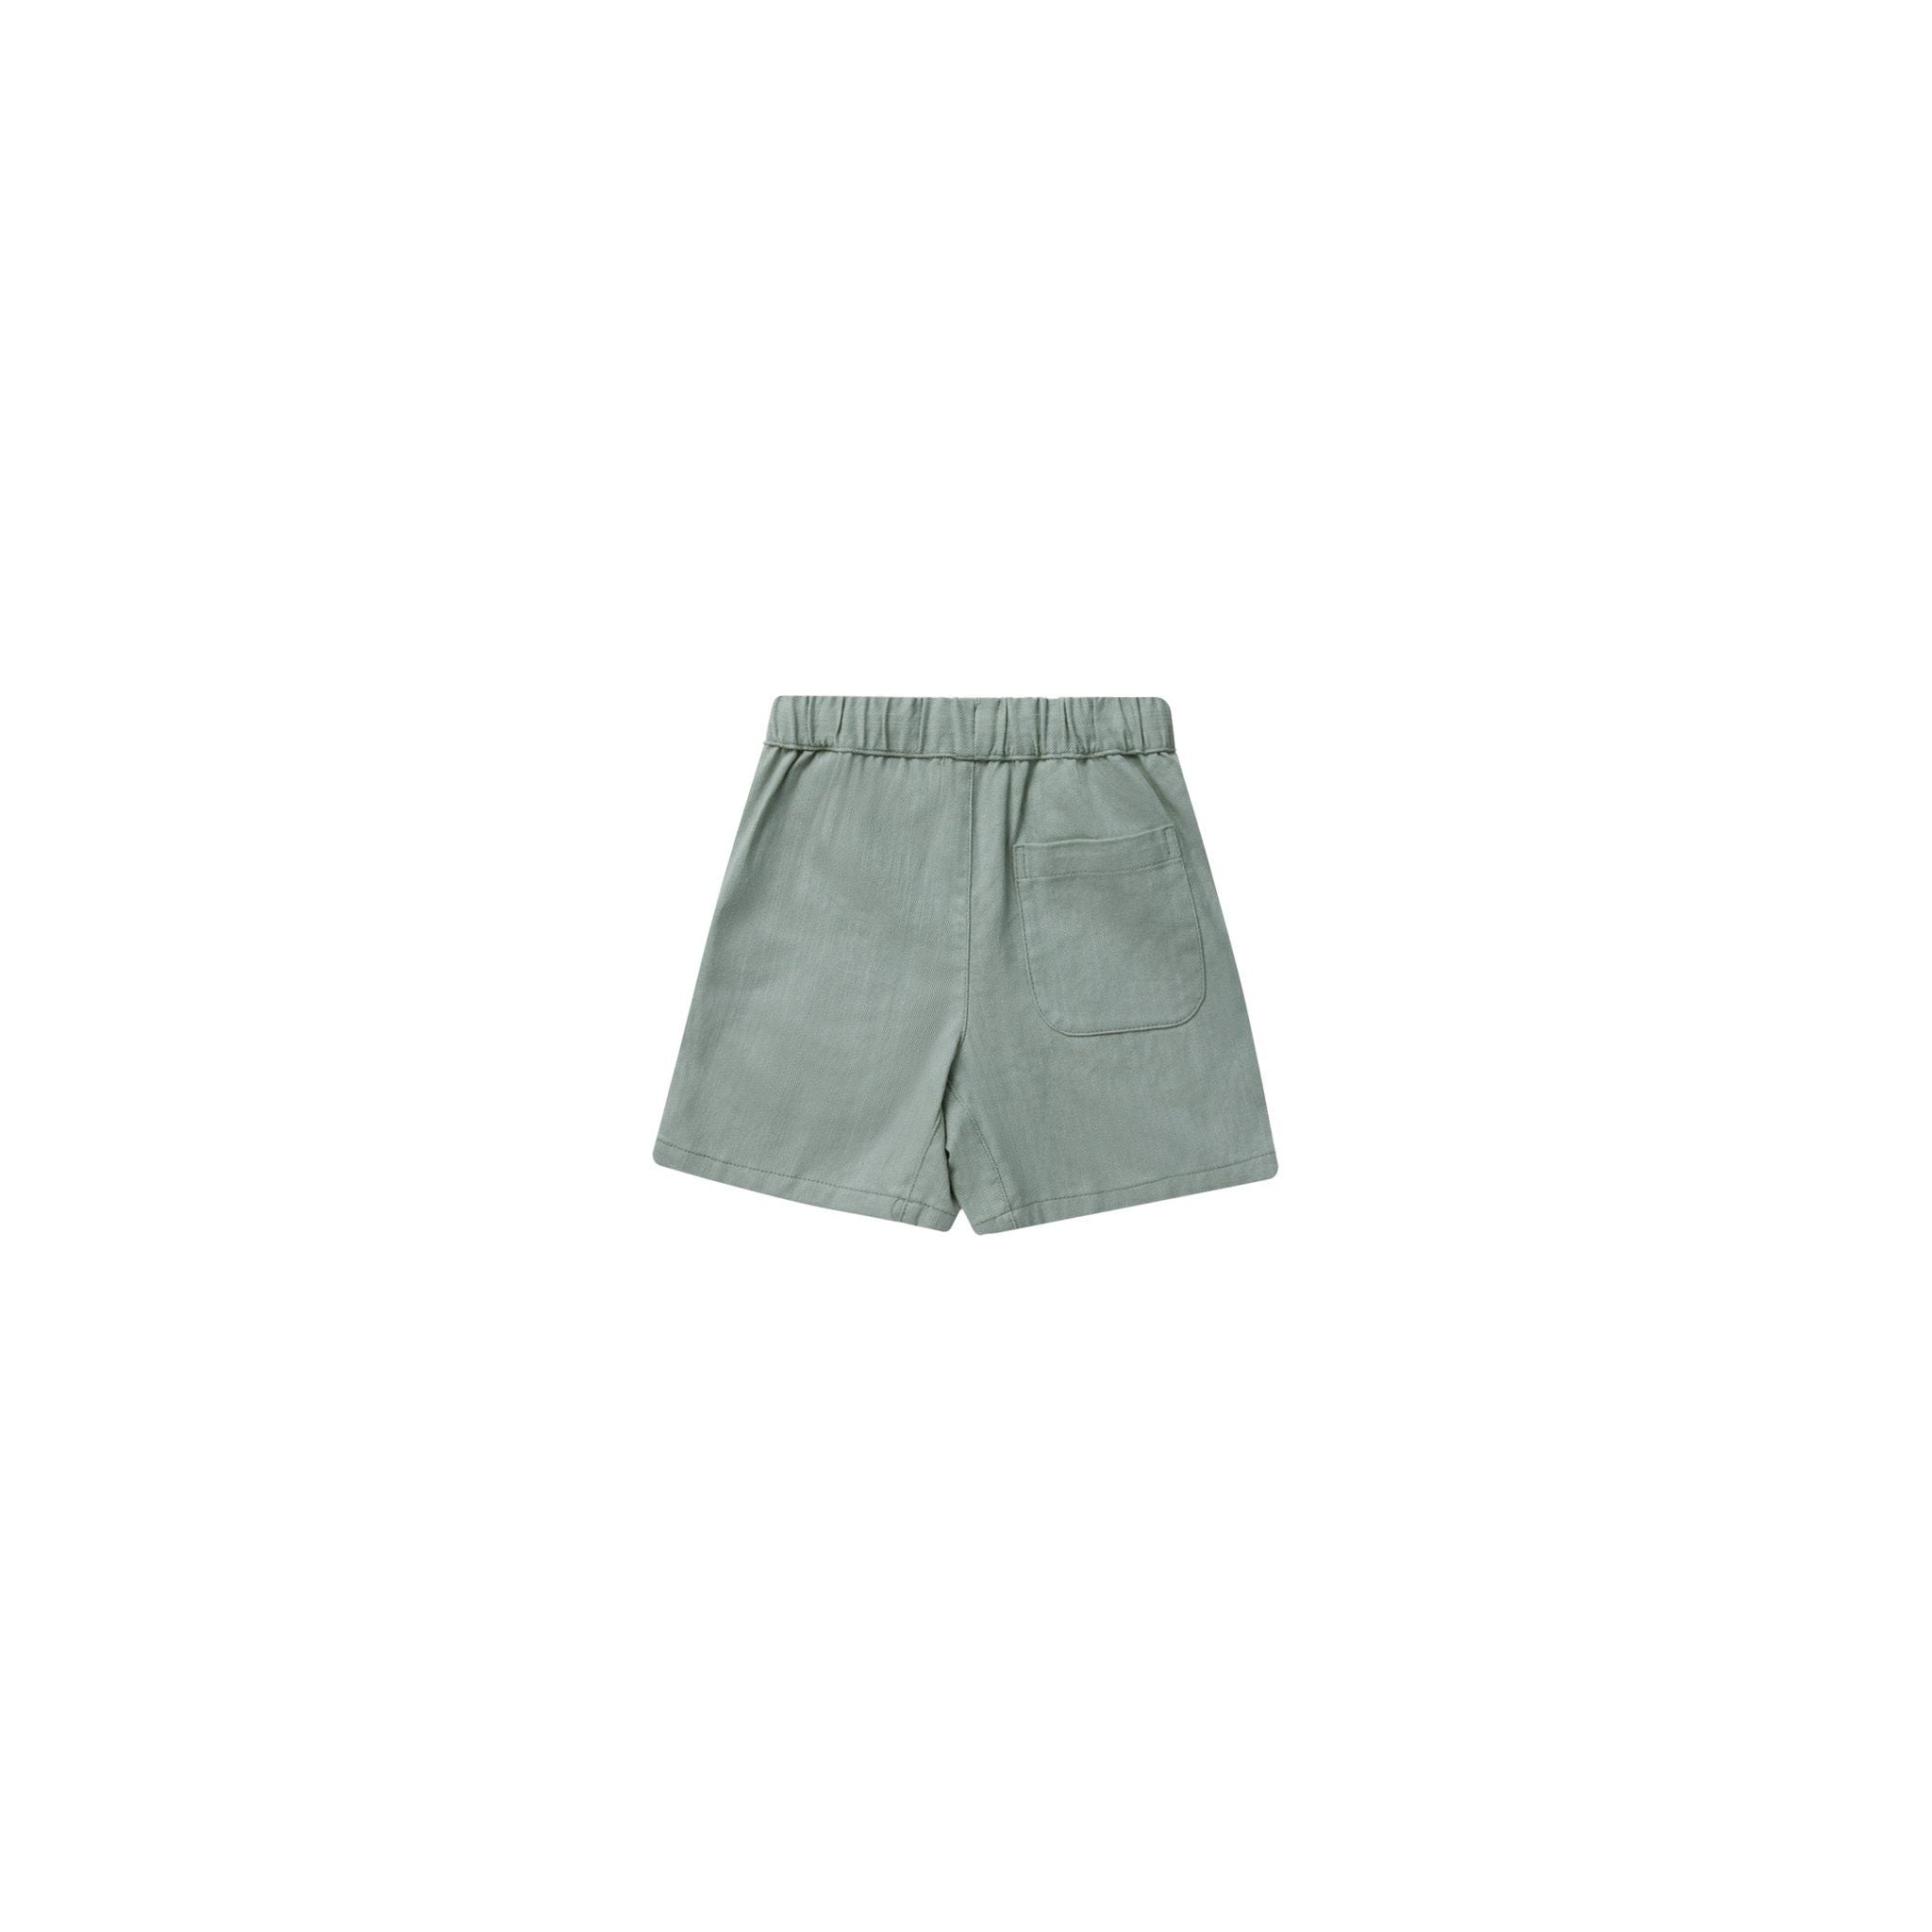 Bermuda Shorts - Aqua